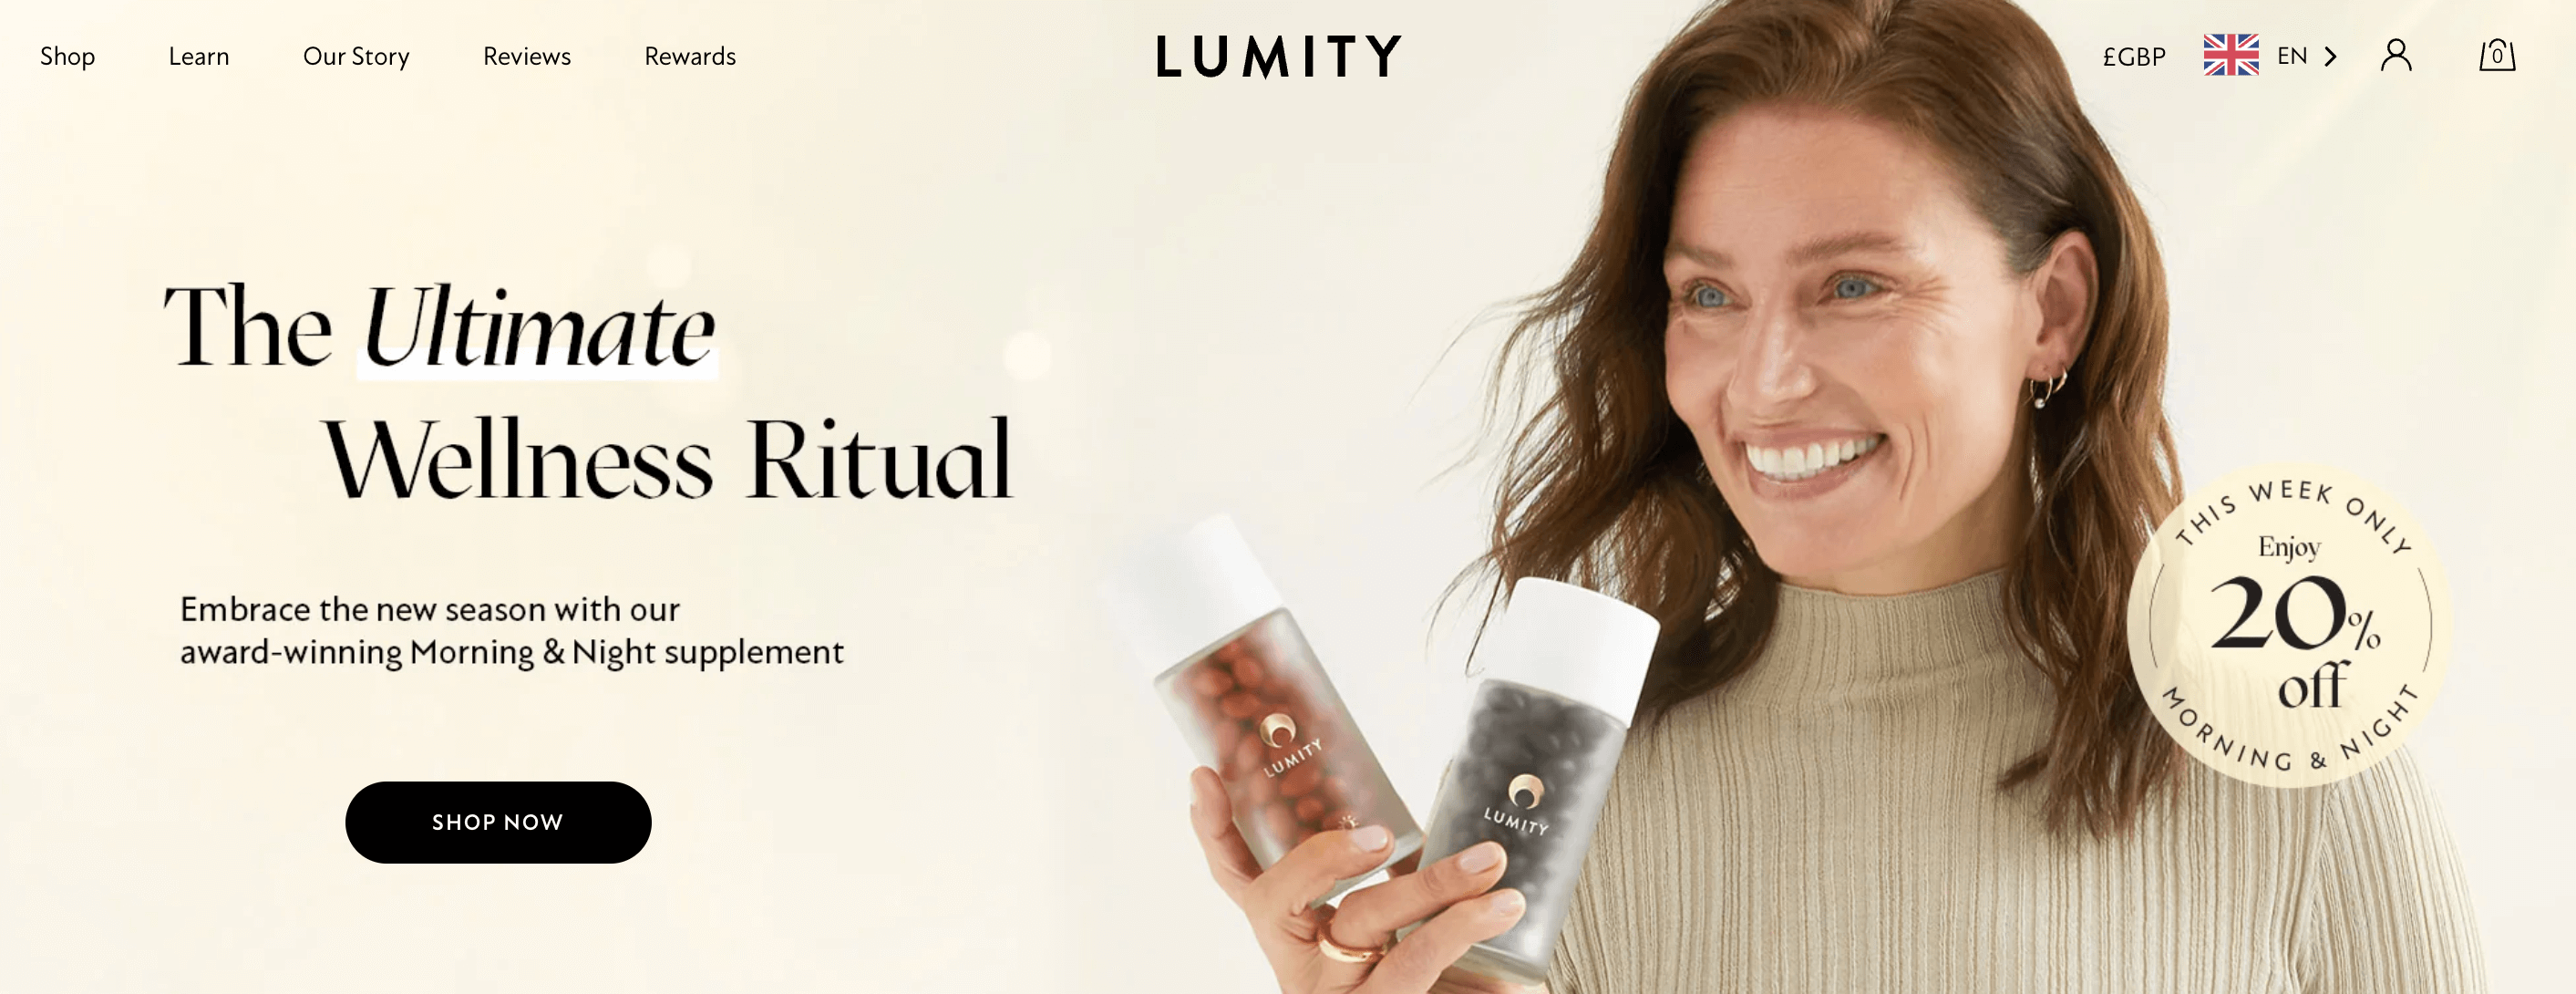 screenshot of ecommerce brand Lumity 